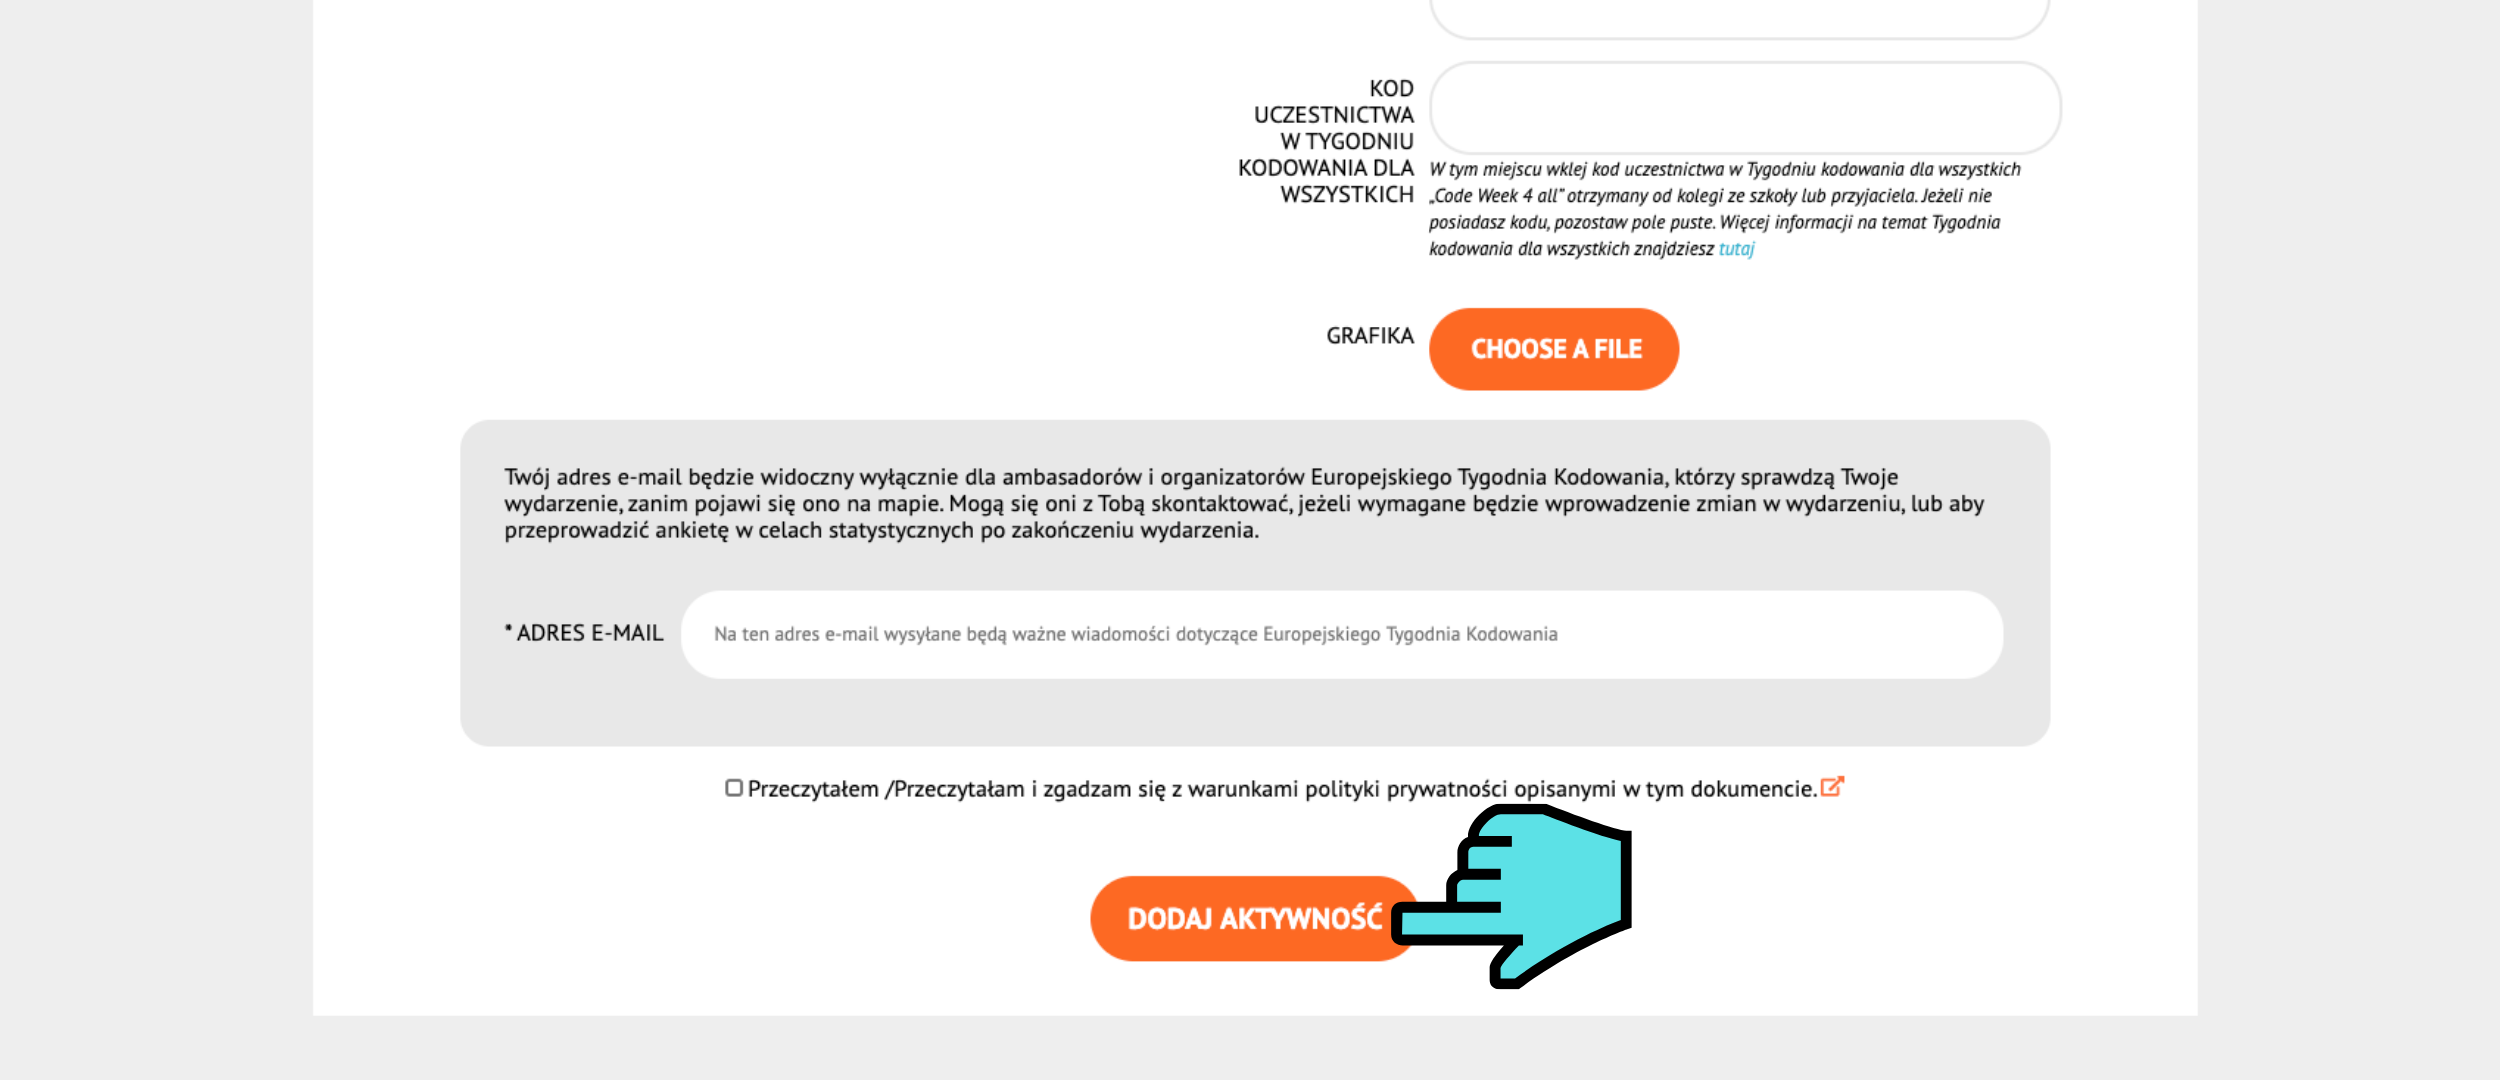 Grafika przedstawia zdjęcie ekranu dodania wydarzenia na stronie internetowej www.codeweek.eu. Na dole strony znajduje się pomarańczowy przycisk z napisem “Dodaj aktywność”. Wskazuje na niego niebieski kursor myszy. 